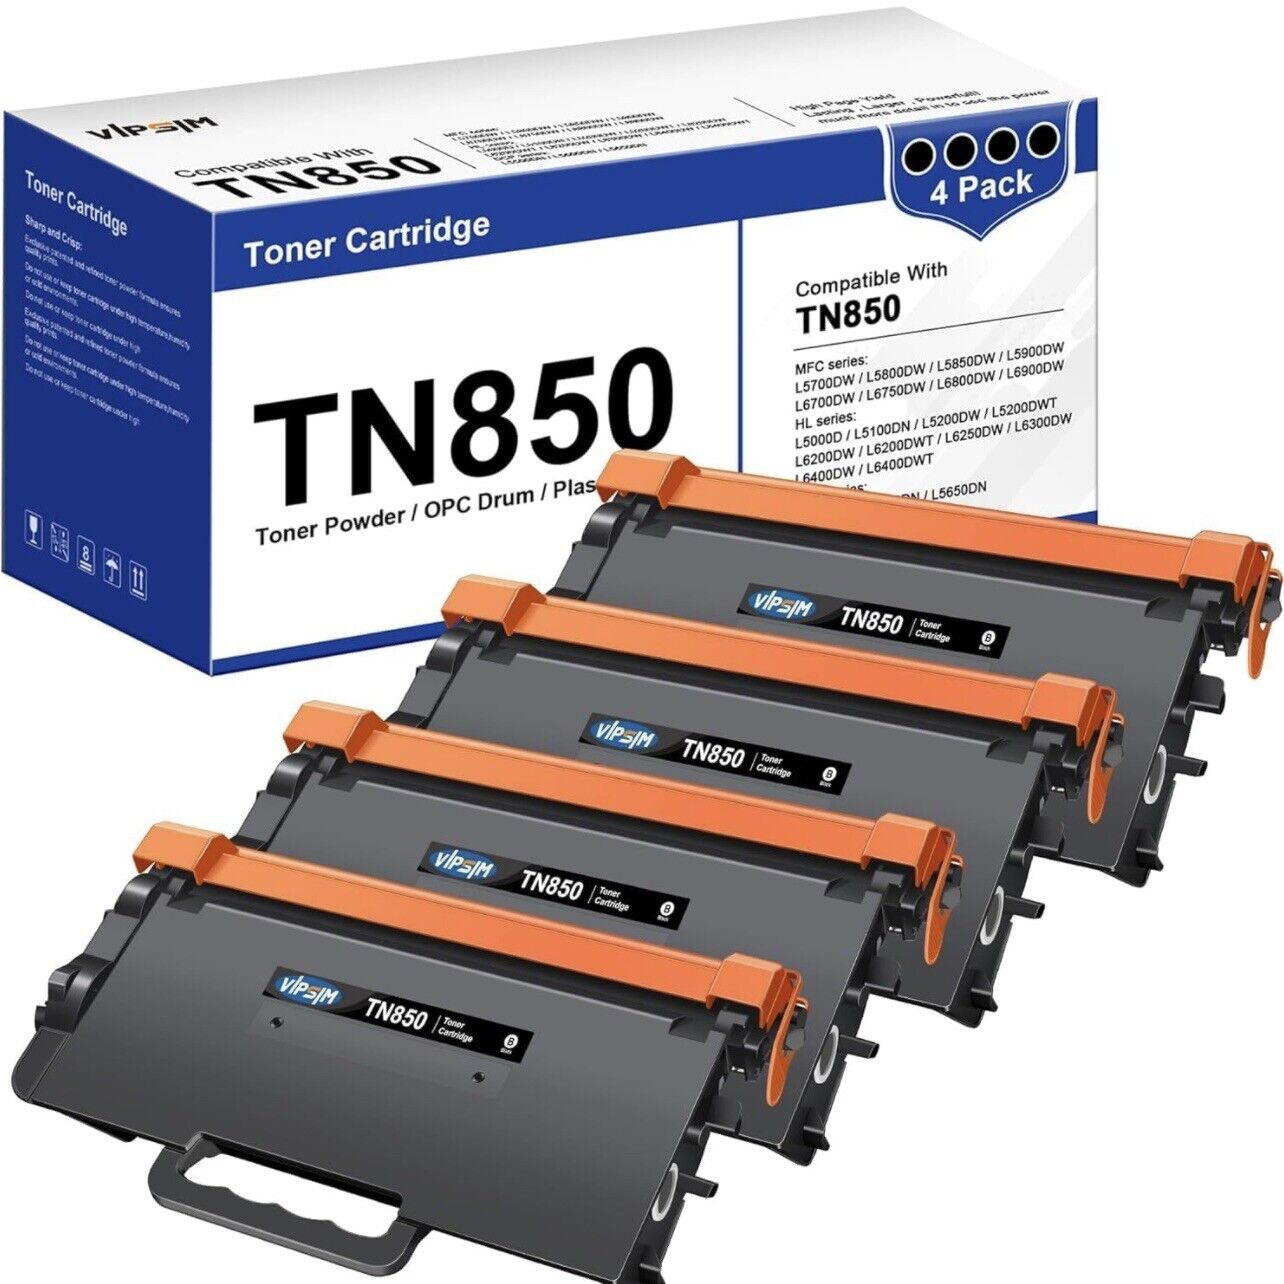 TN850 Toner Cartridge Replacement HL-L6200DW HL-L5200DW MFC-L5850DW 4 Pack